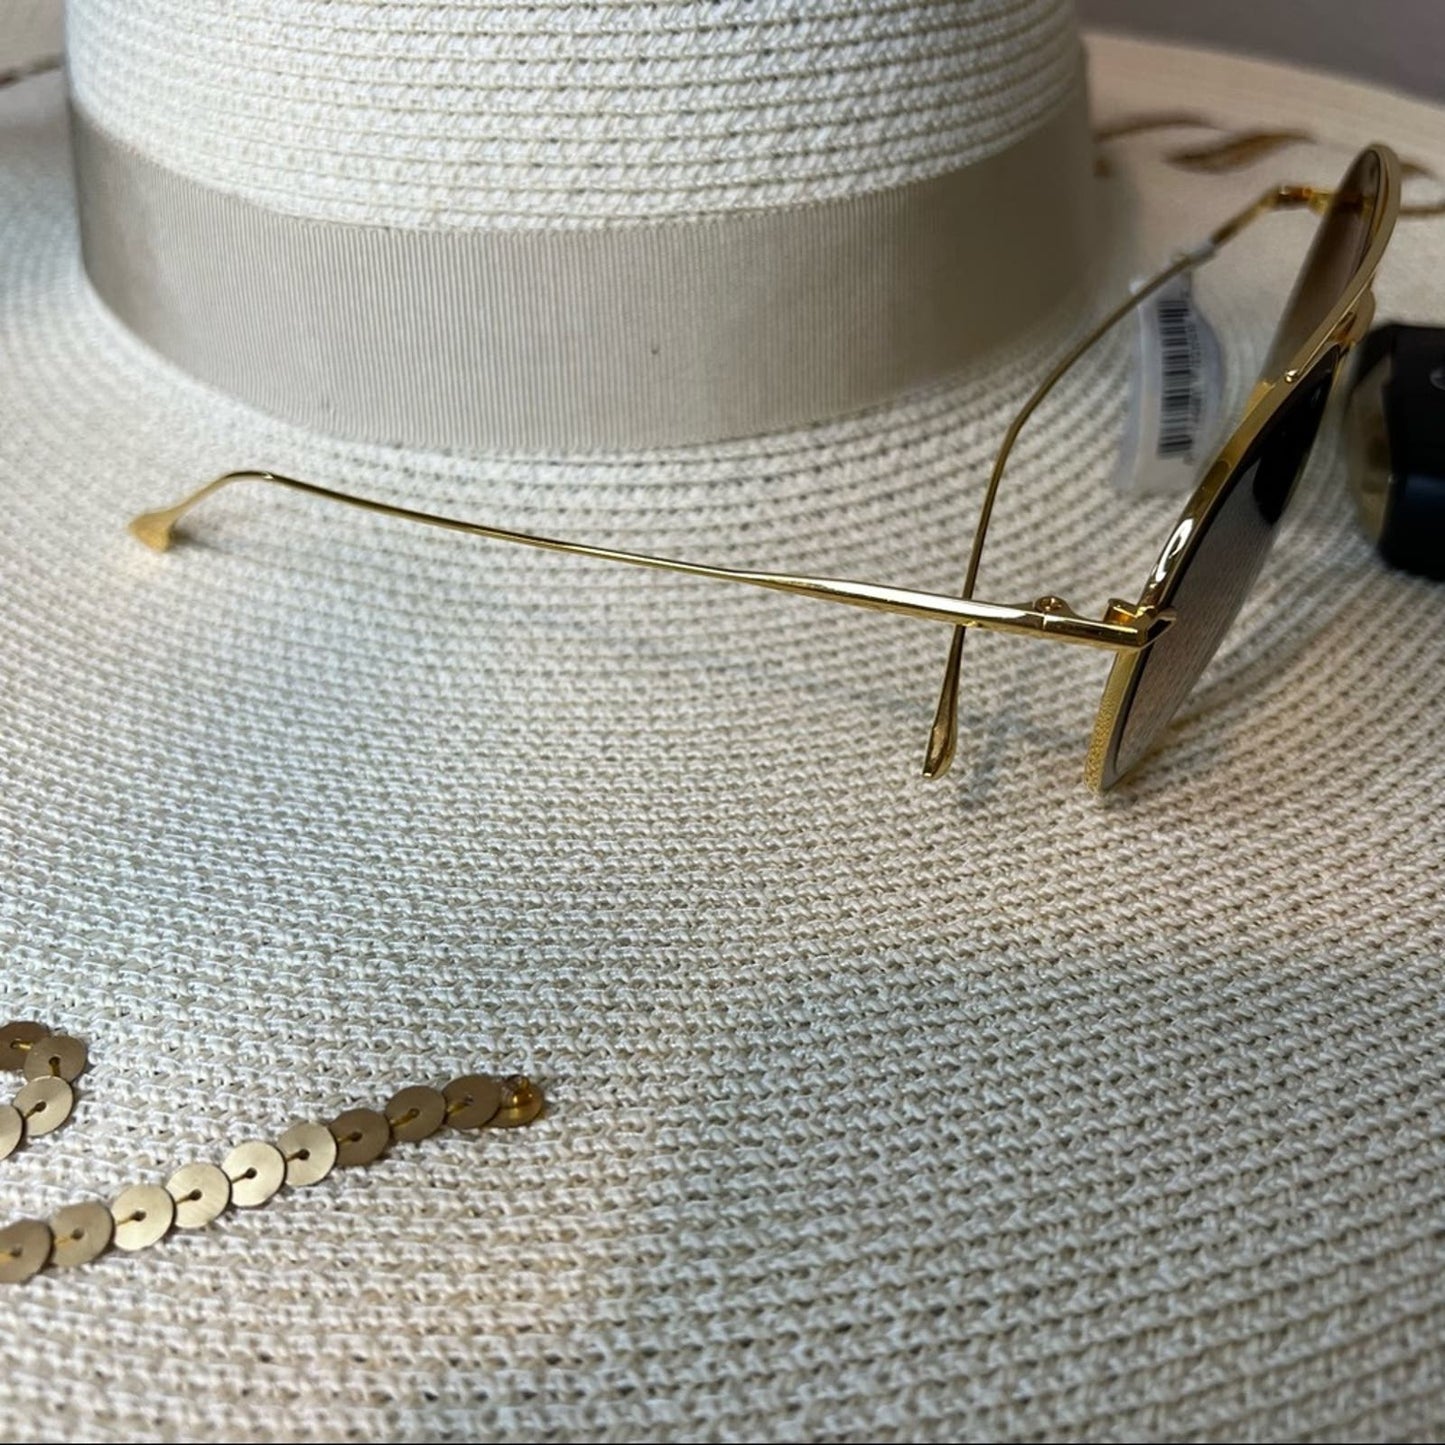 DITA Gold Wired “Safilo” Sunglasses, Black Leather Case, NWT!